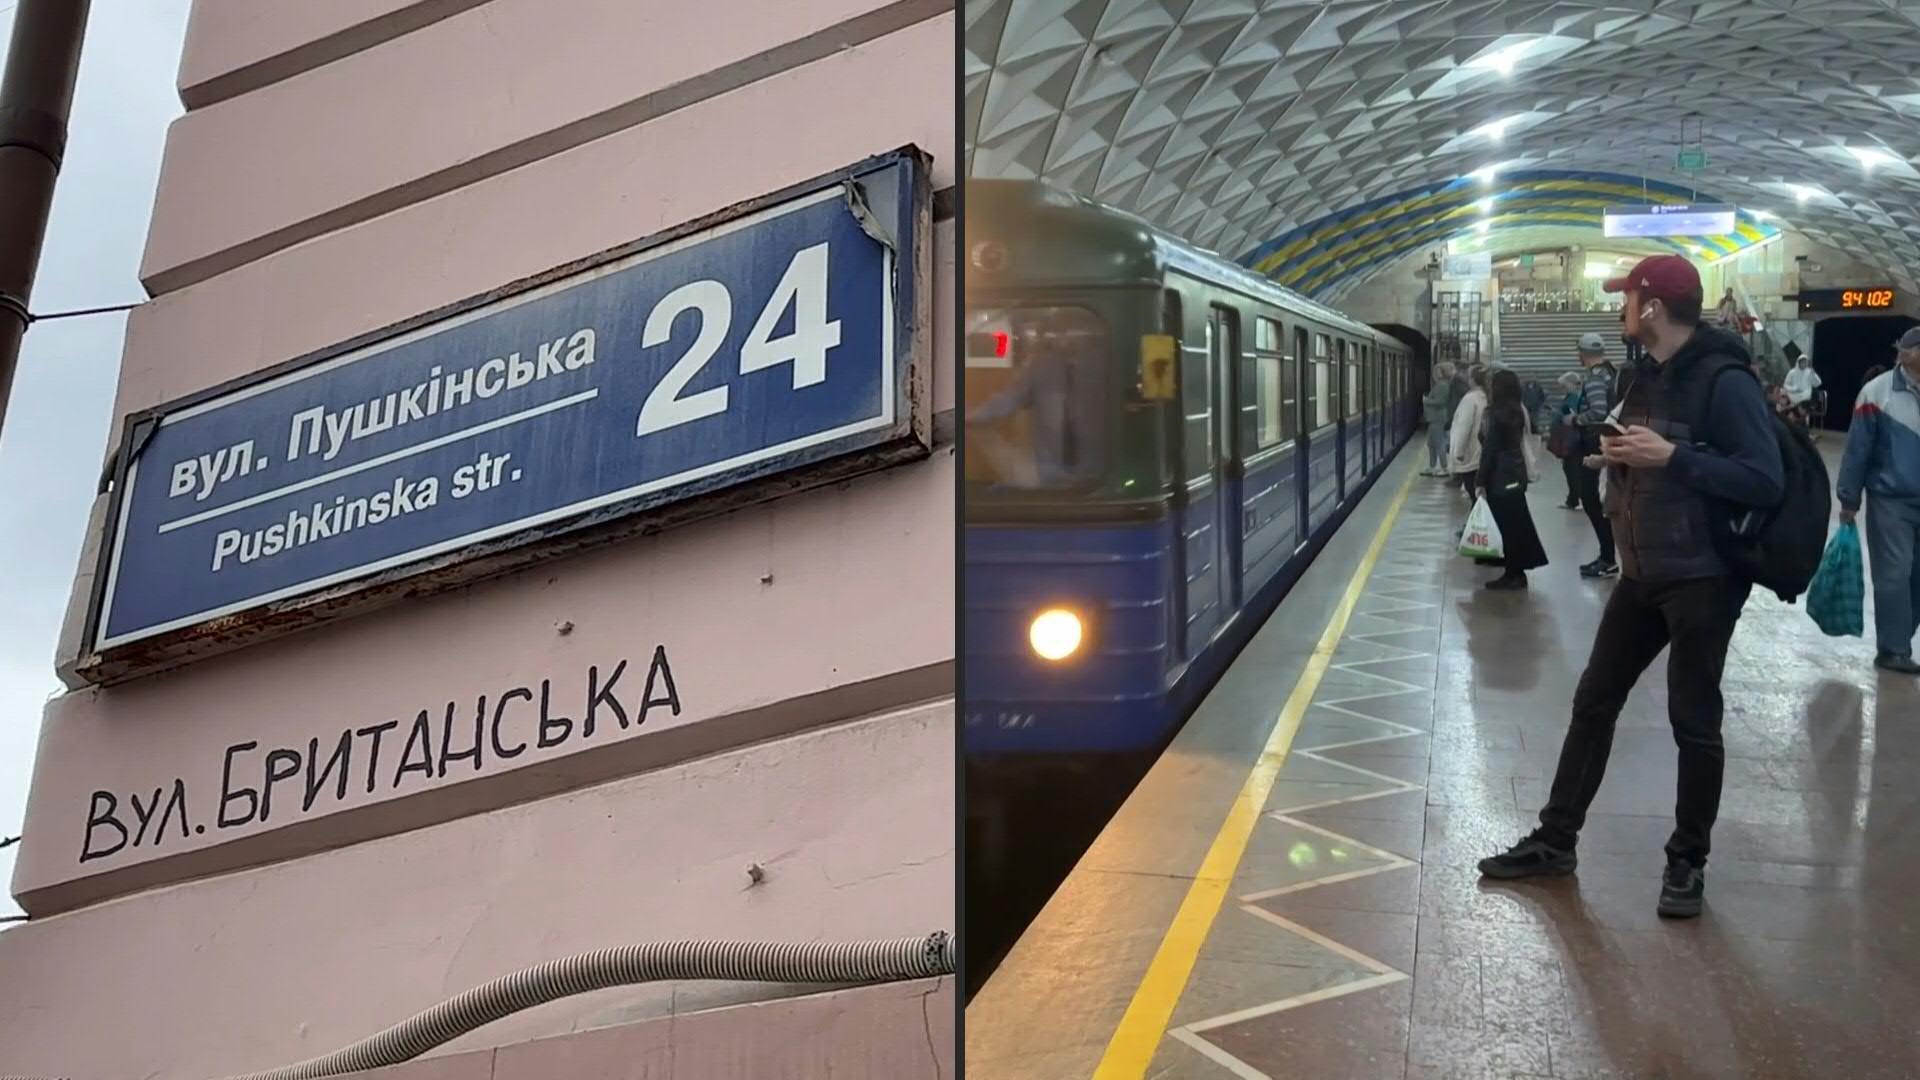 La ciudad ucraniana de Kharkiv "desrusifica" sus calles, mientras reanuda servicio del metro